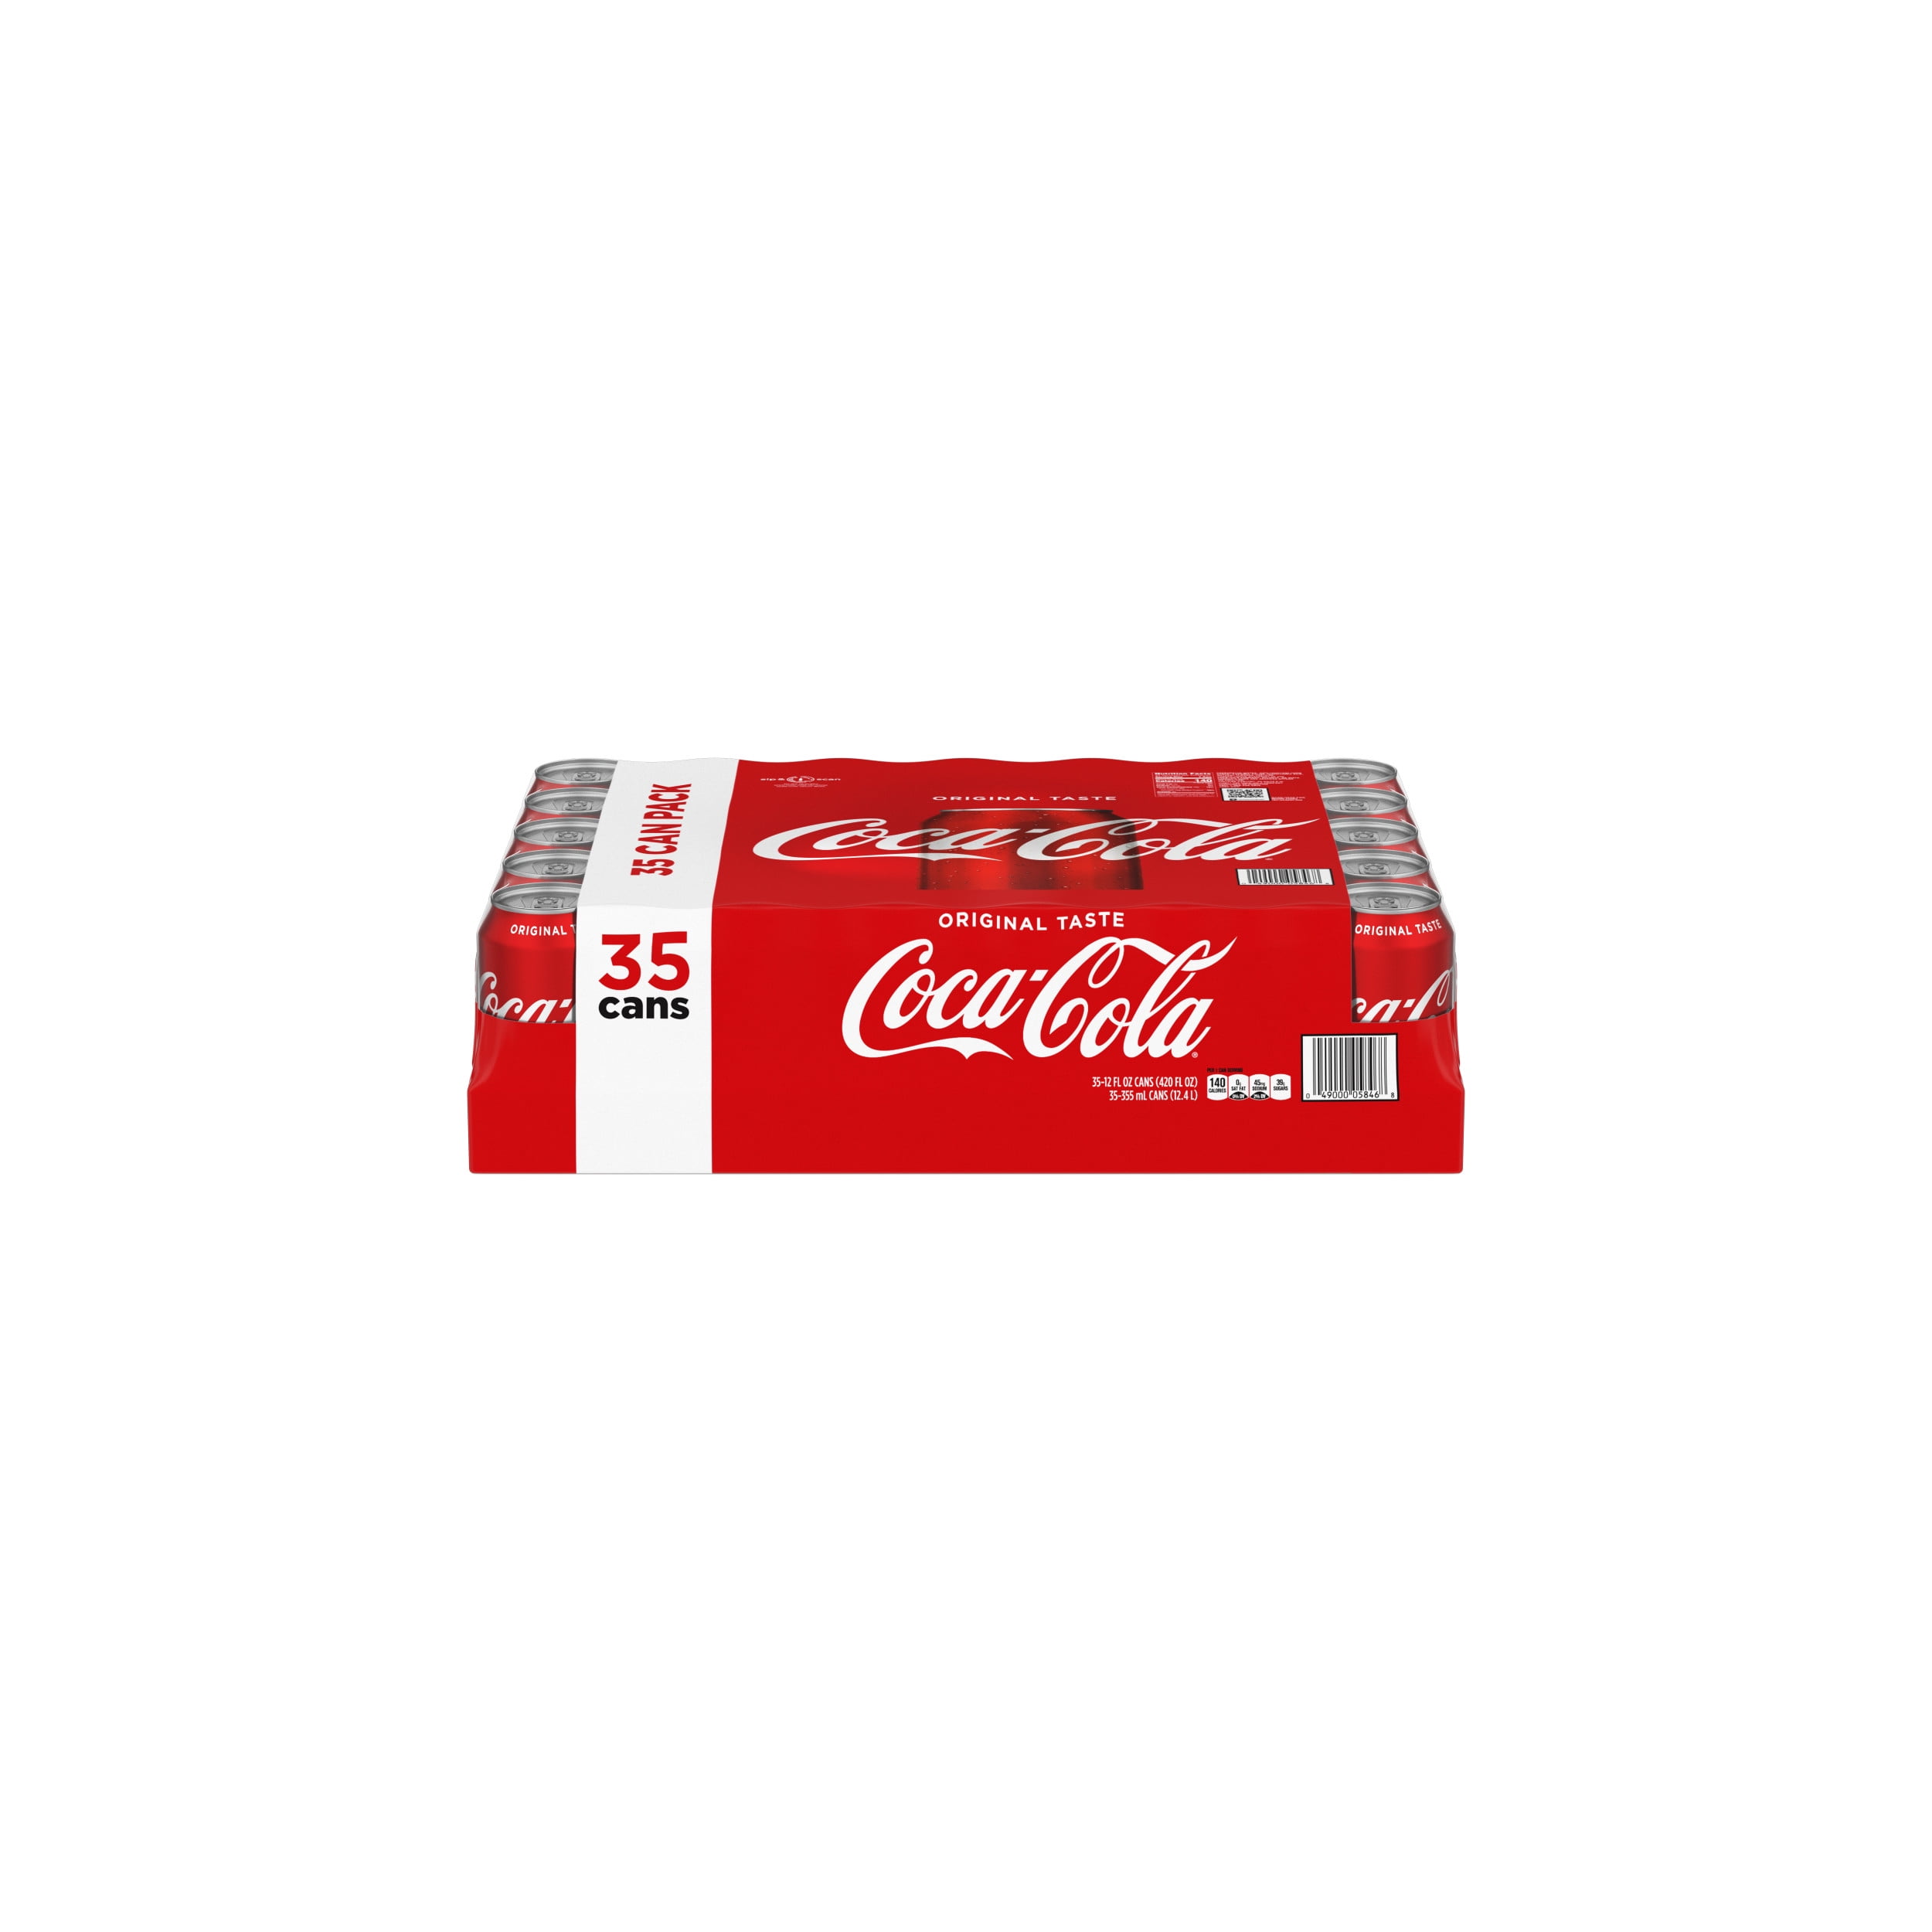 Coca-Cola - The Original Taste